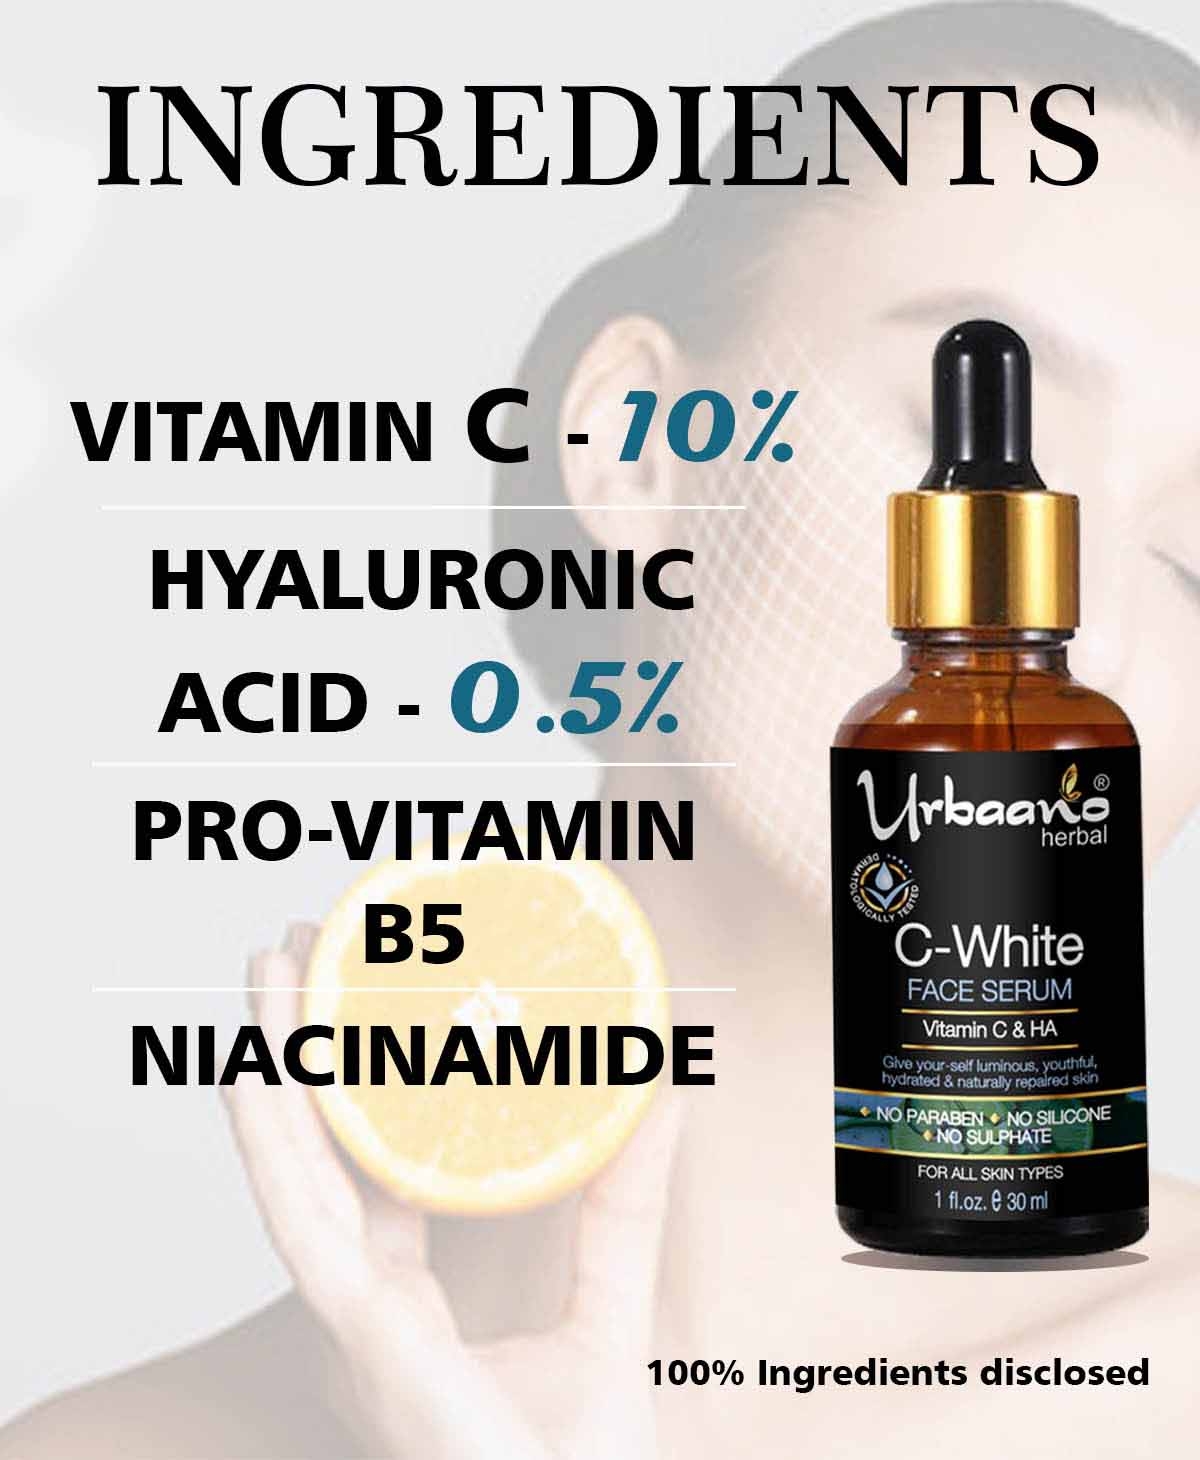 Urbaano Herbal | Urbaano Herbal Kumkumadi Skin Whitening & Brightening Cream & Vitamin C10, Hyaluronic Acid Face Serum 2